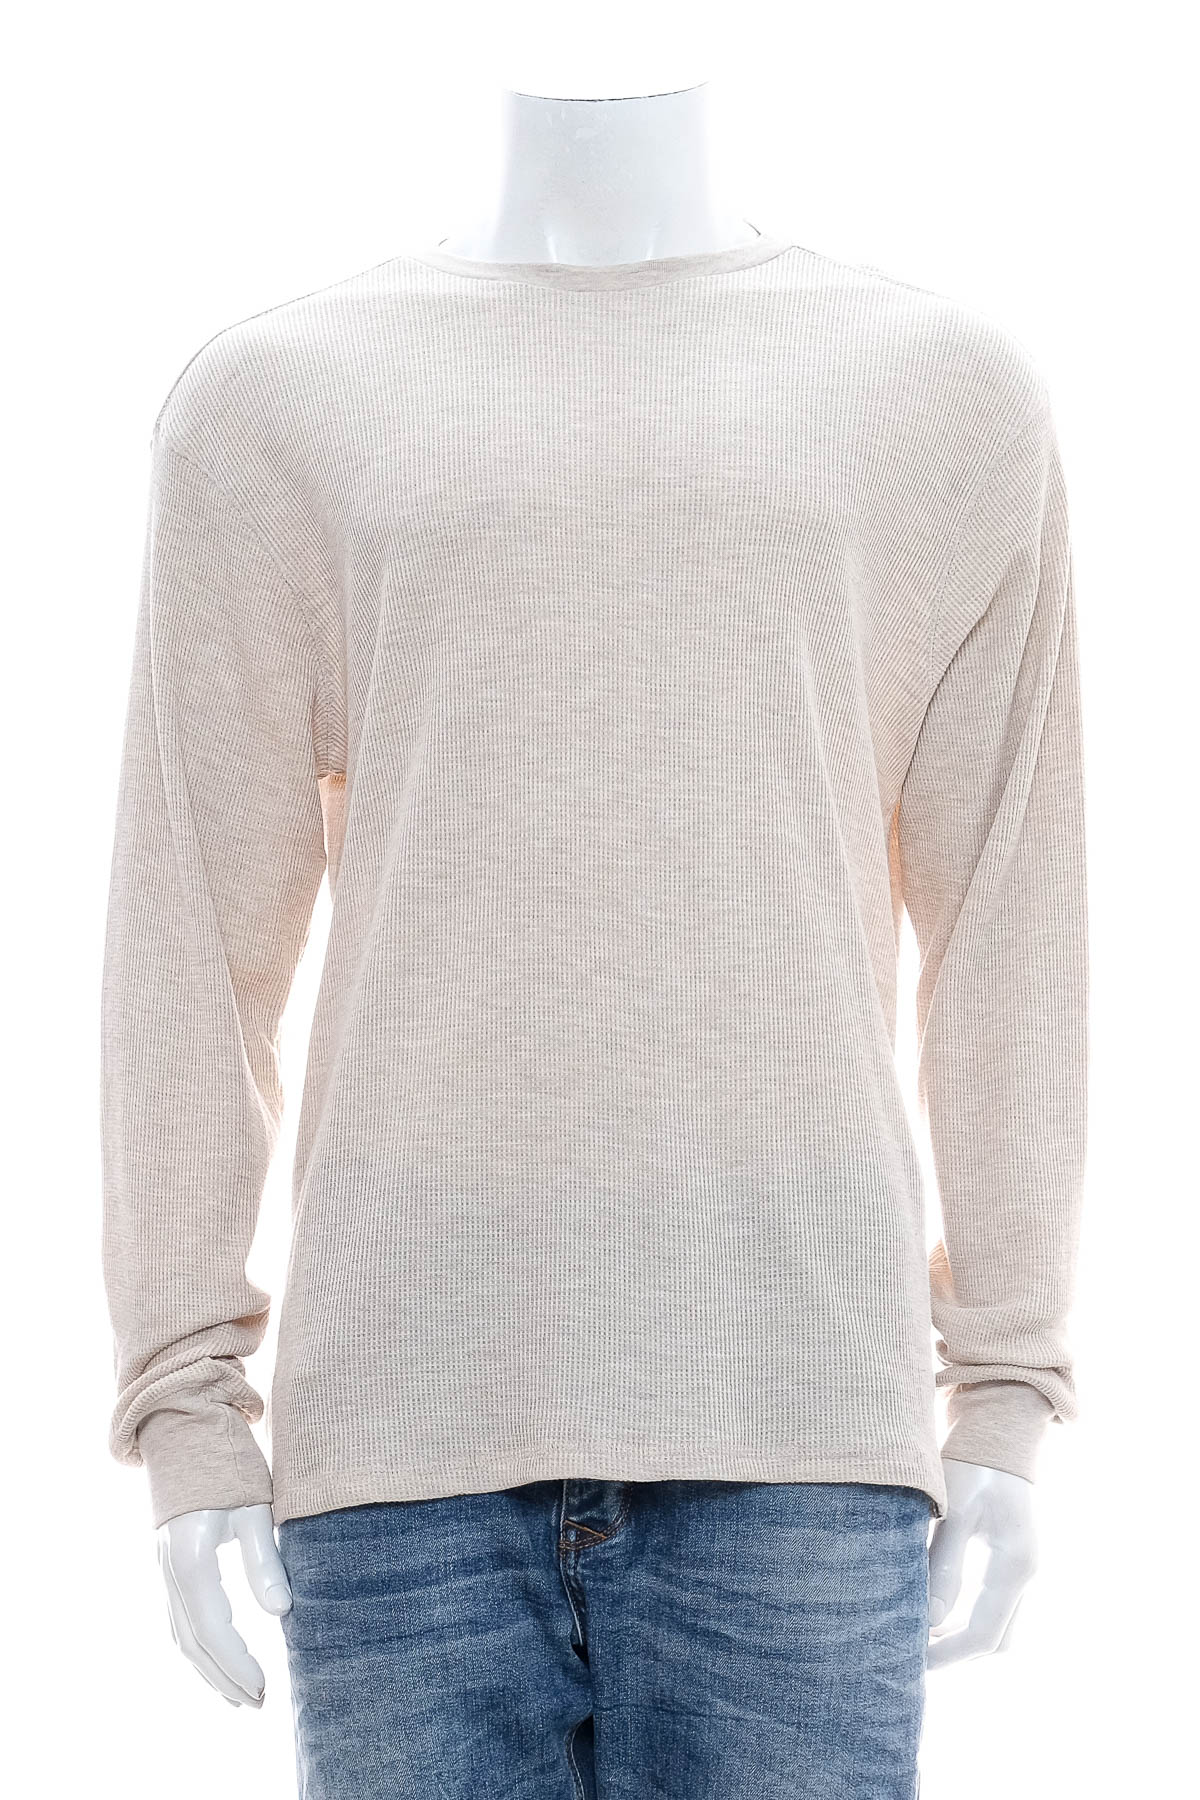 Men's sweater - Billabong - 0